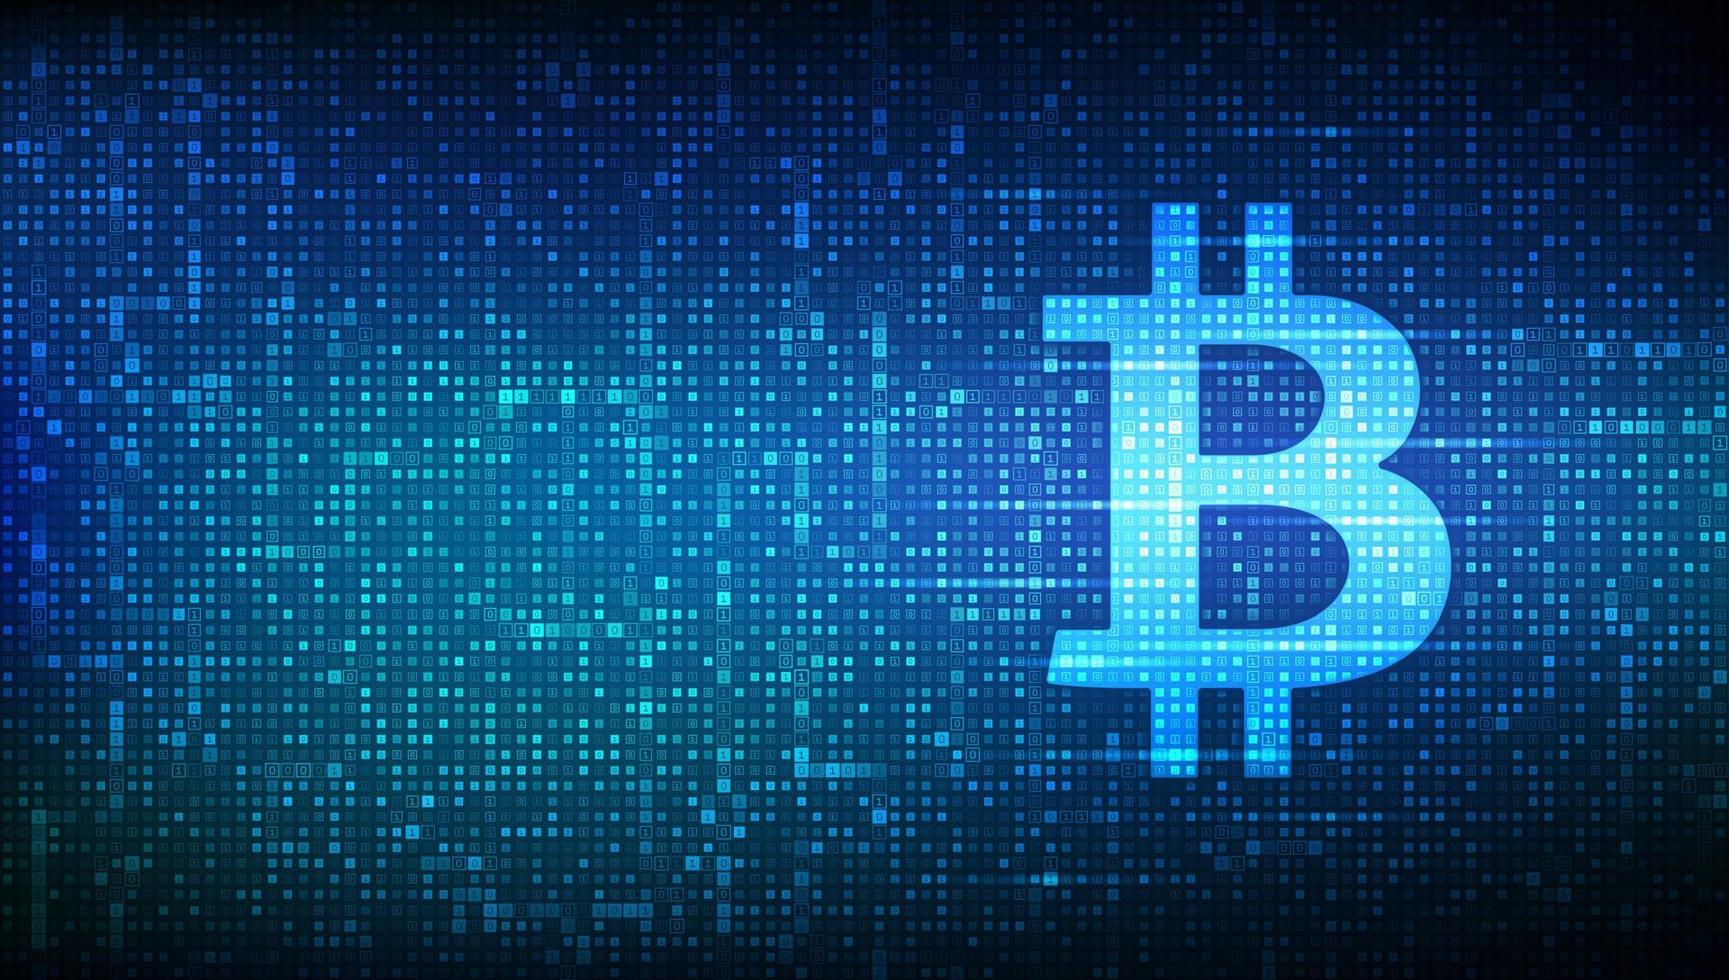 icona bitcoin realizzata con codice binario. tecnologia blockchain. segno di criptovaluta digitale bitcoin. concetto astratto di e-commerce e pagamento. sfondo del codice digitale con cifre 1.0. illustrazione vettoriale. vettore